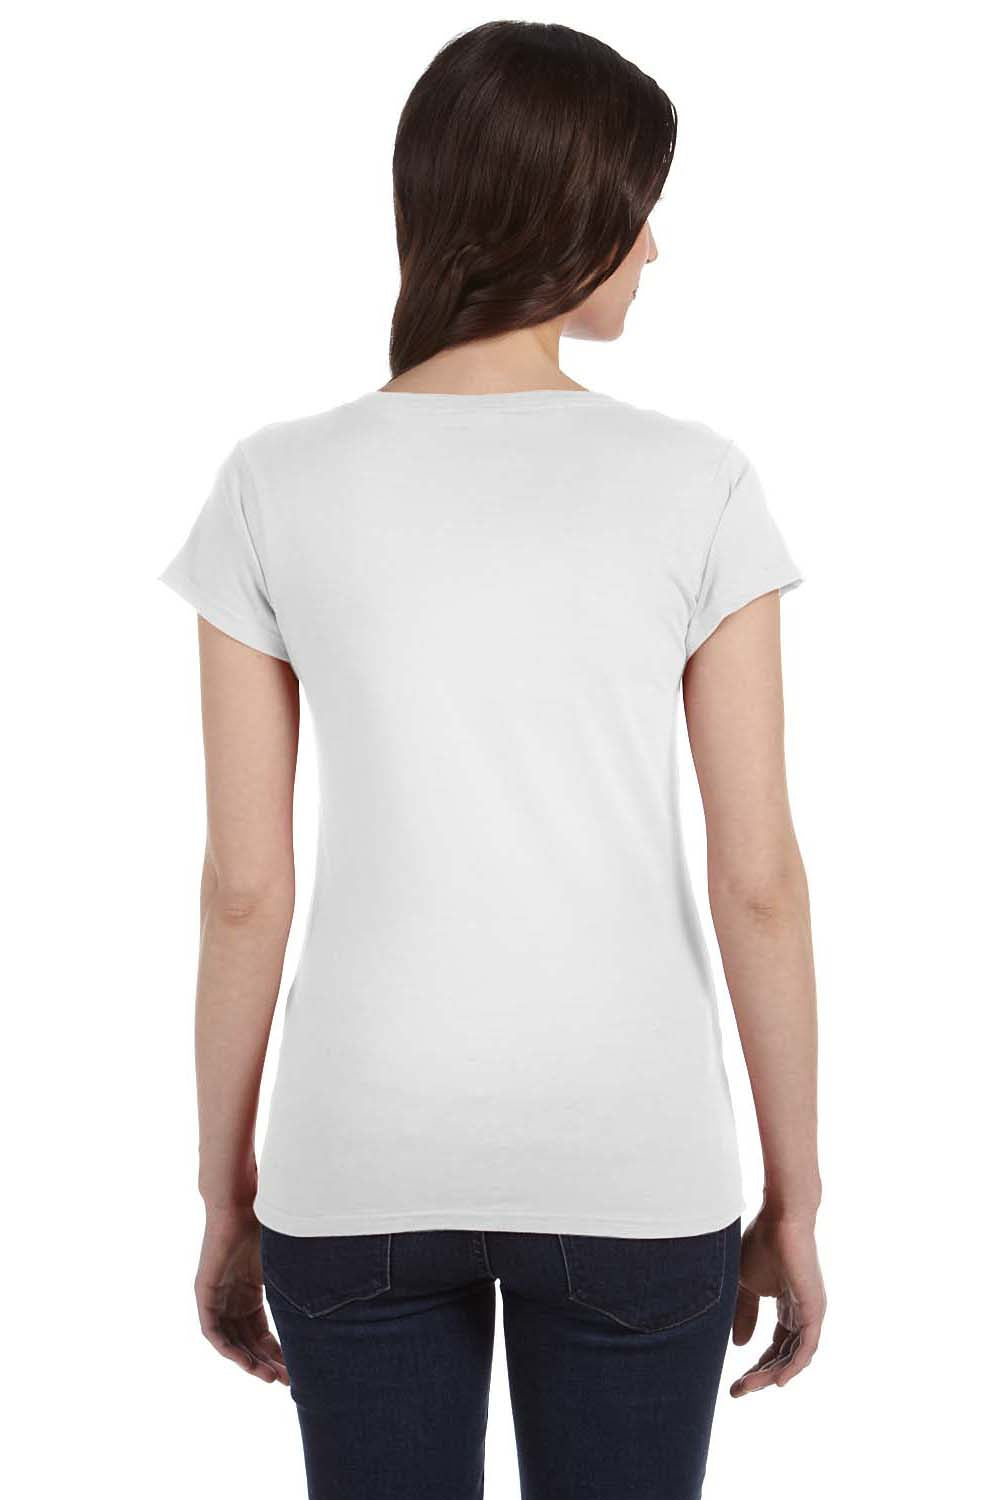 Gildan G64VL Womens Softstyle Short Sleeve V-Neck T-Shirt White Back